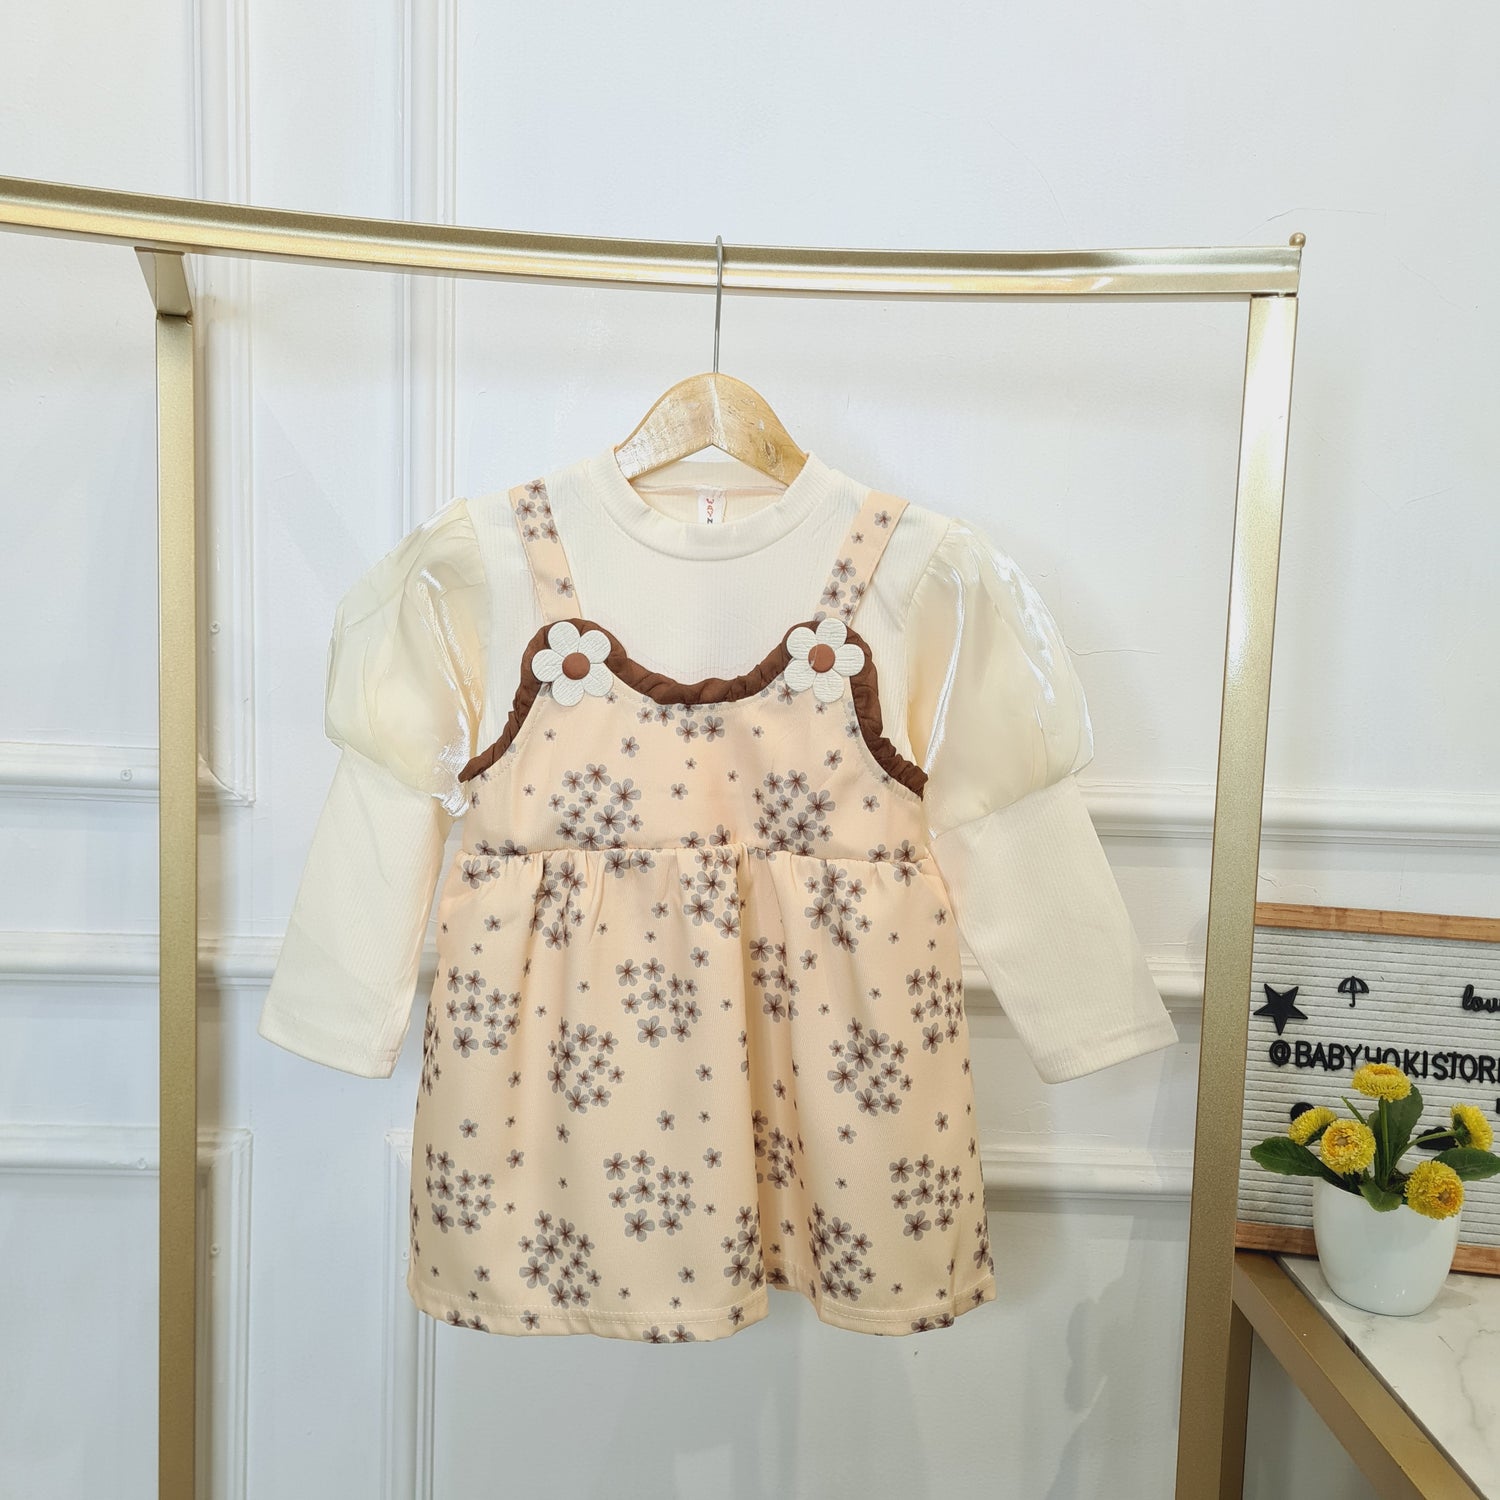 [340423-V1] - Baju Dress Lengan Panjang Bunga Fashion Anak Perempuan Import - Motif Soothing Flower